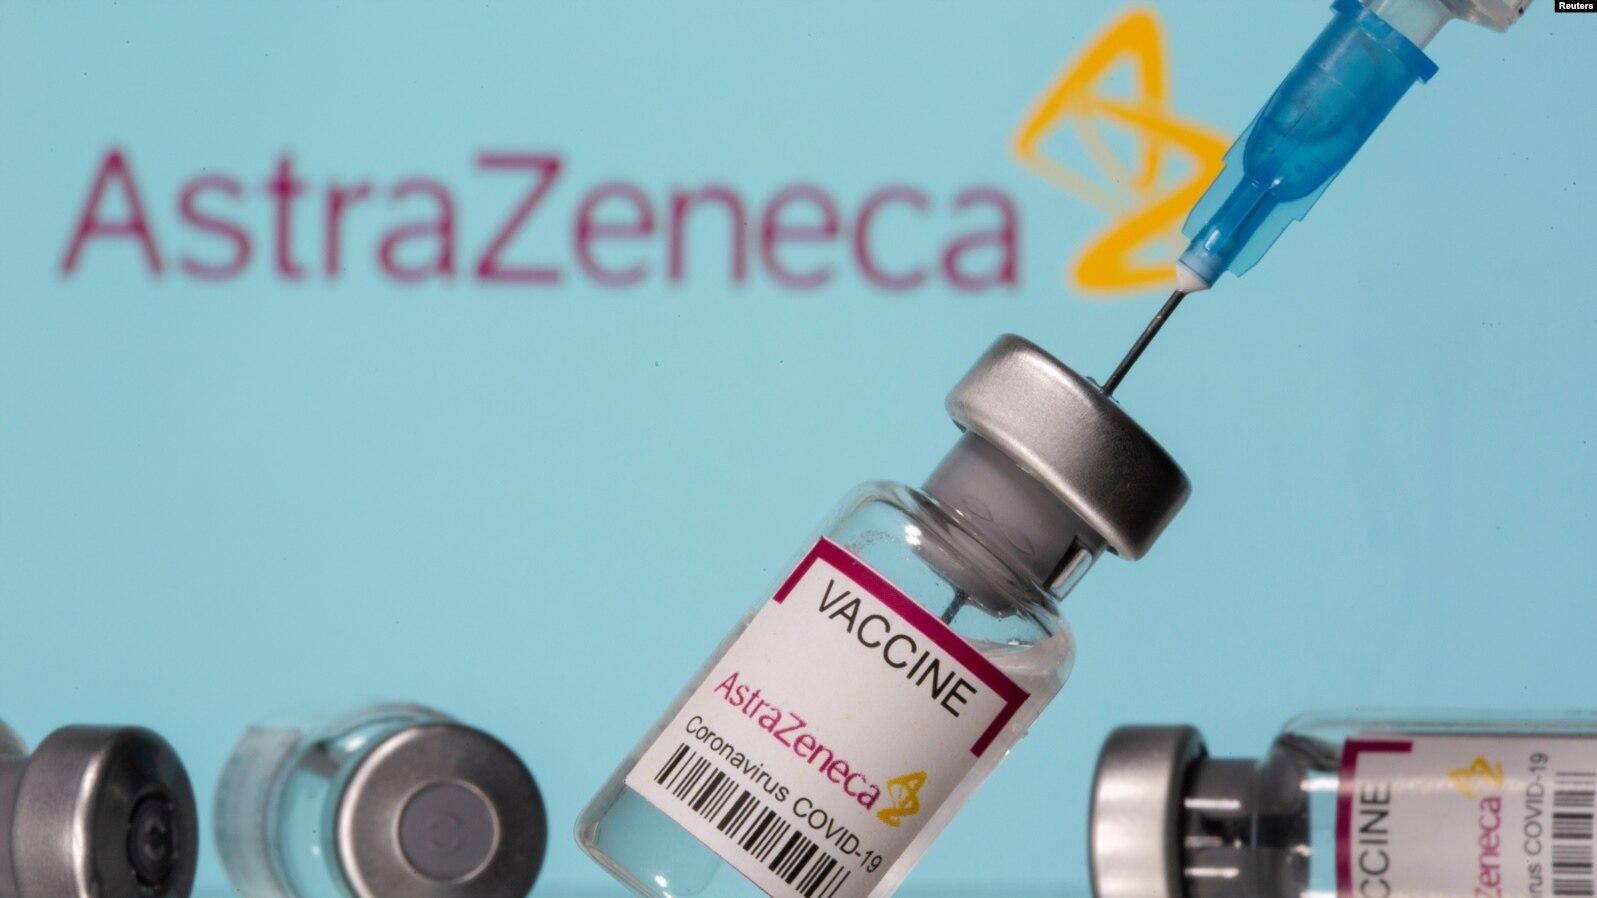 AstraZeneca обновит данные об испытаниях: чтобы опровергнуть претензии США